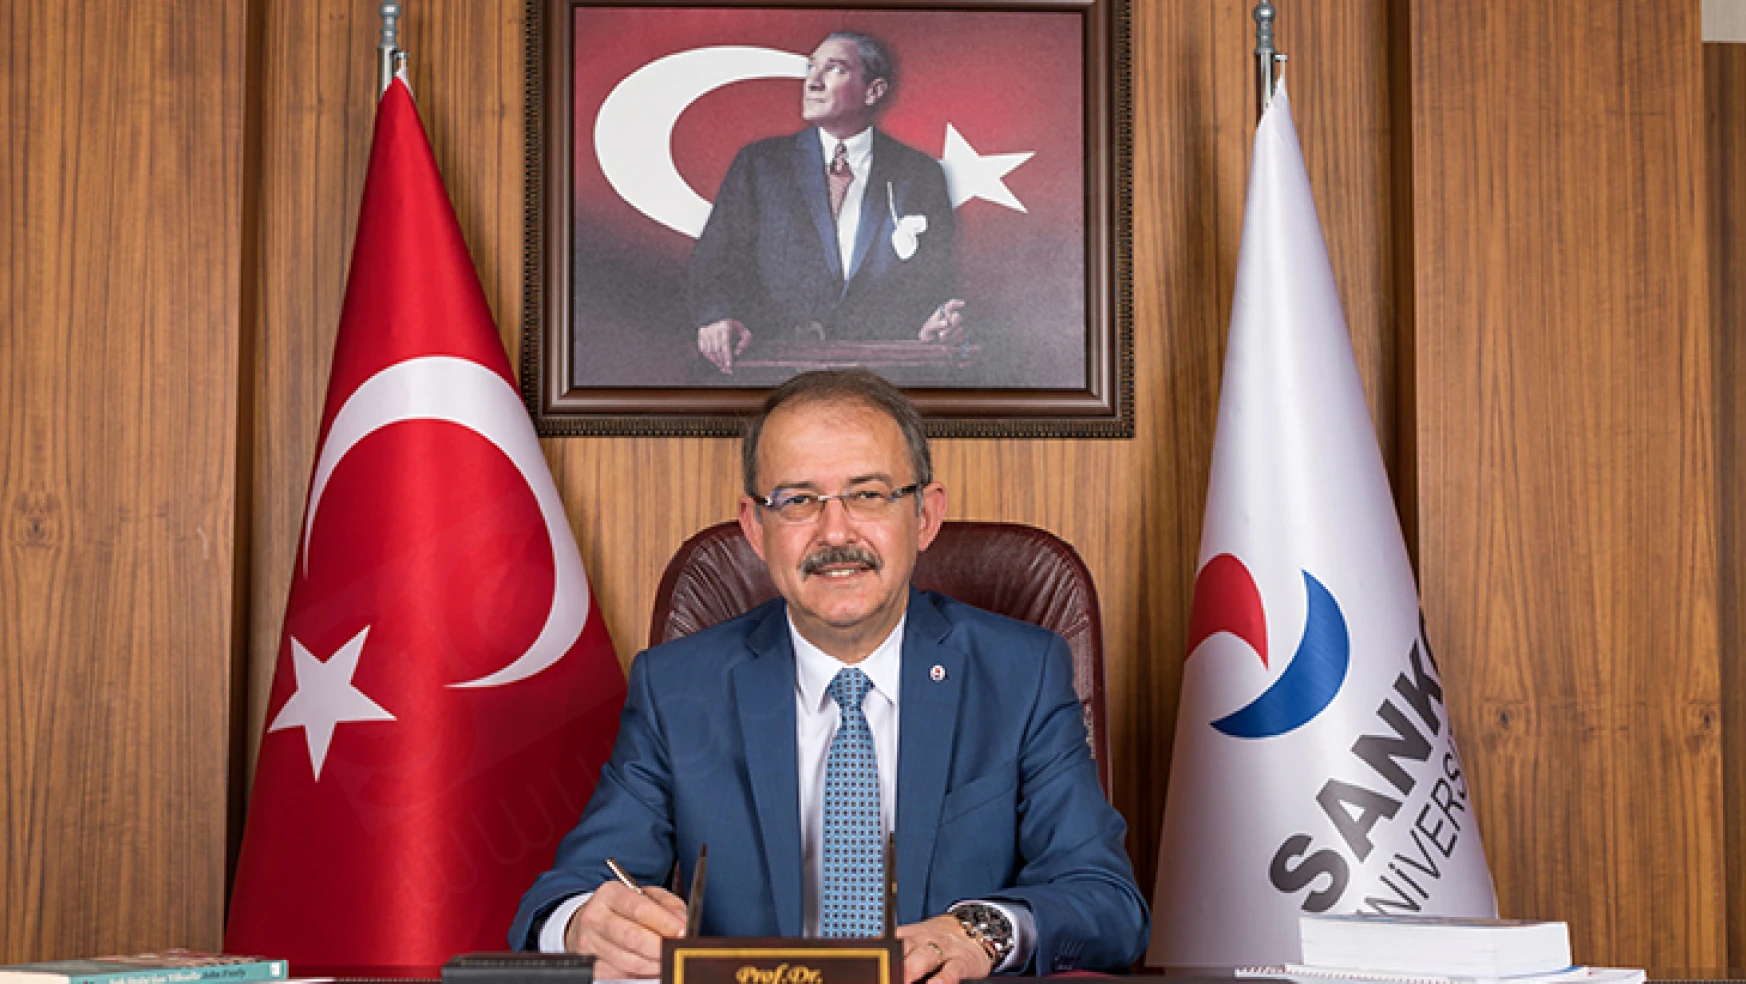 Rektör Prof. Dr. Dağlı: Bağımsızlığımızın sembolü büyük zaferin 100'üncü gurur yılını kutluyoruz